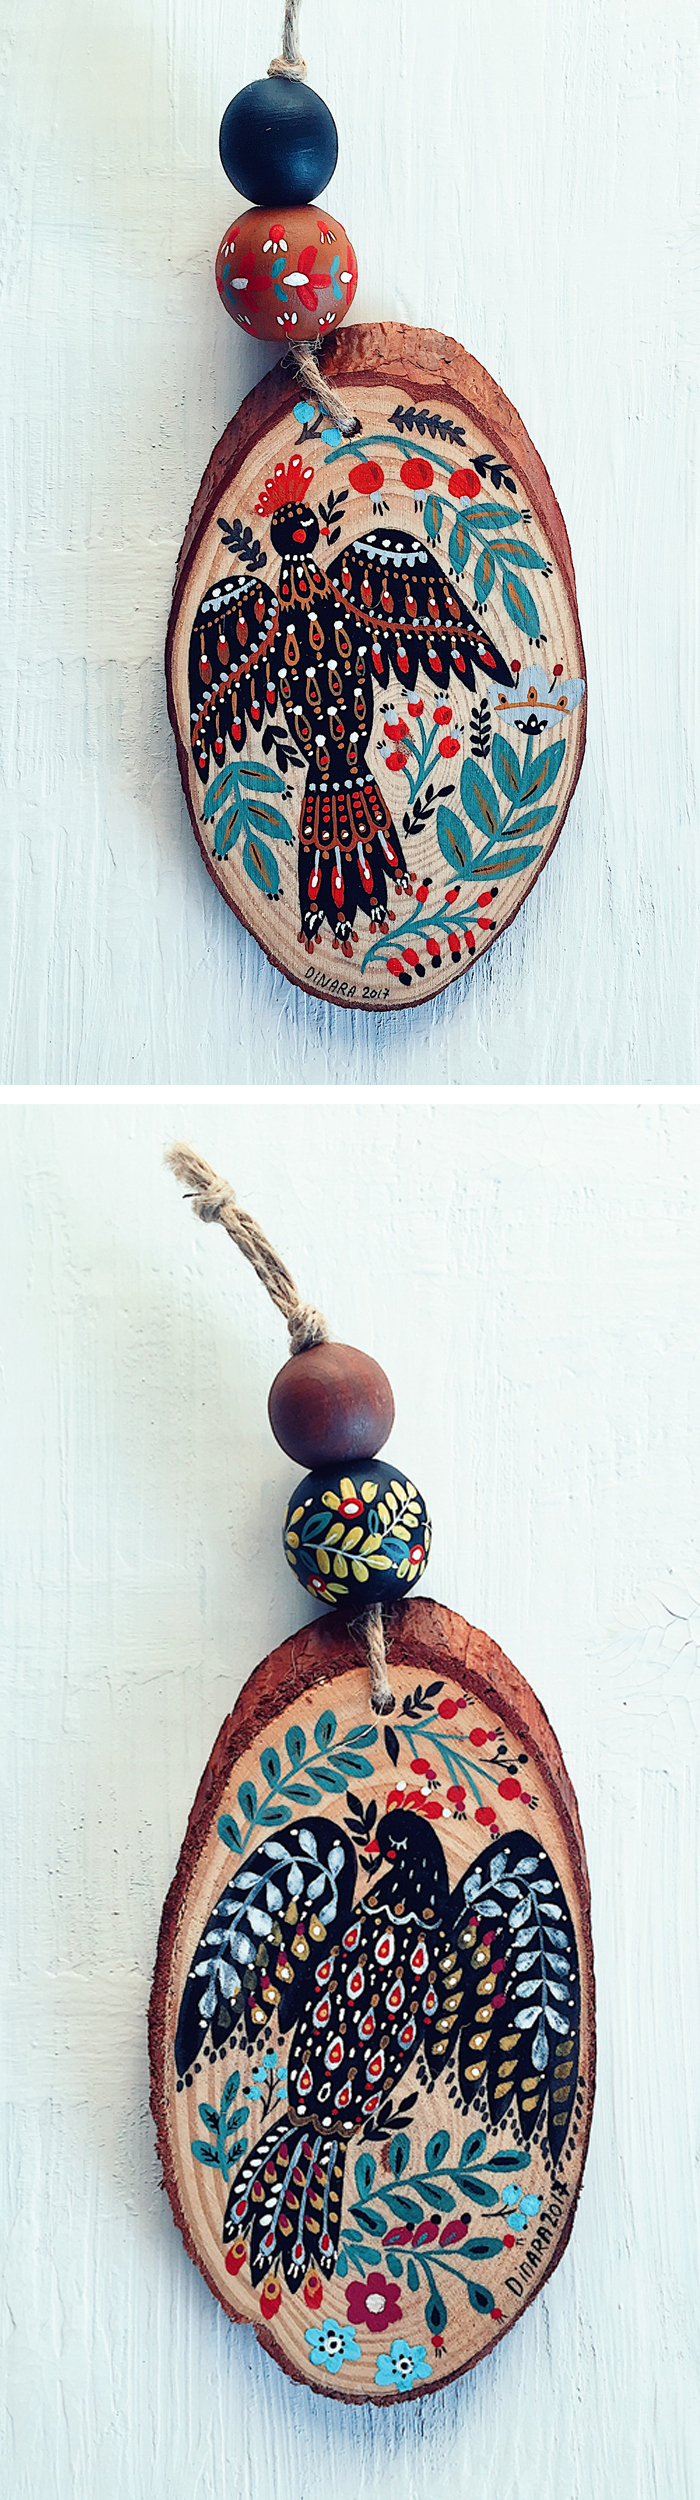 Holiday ornaments by Dinara Mirtalipova